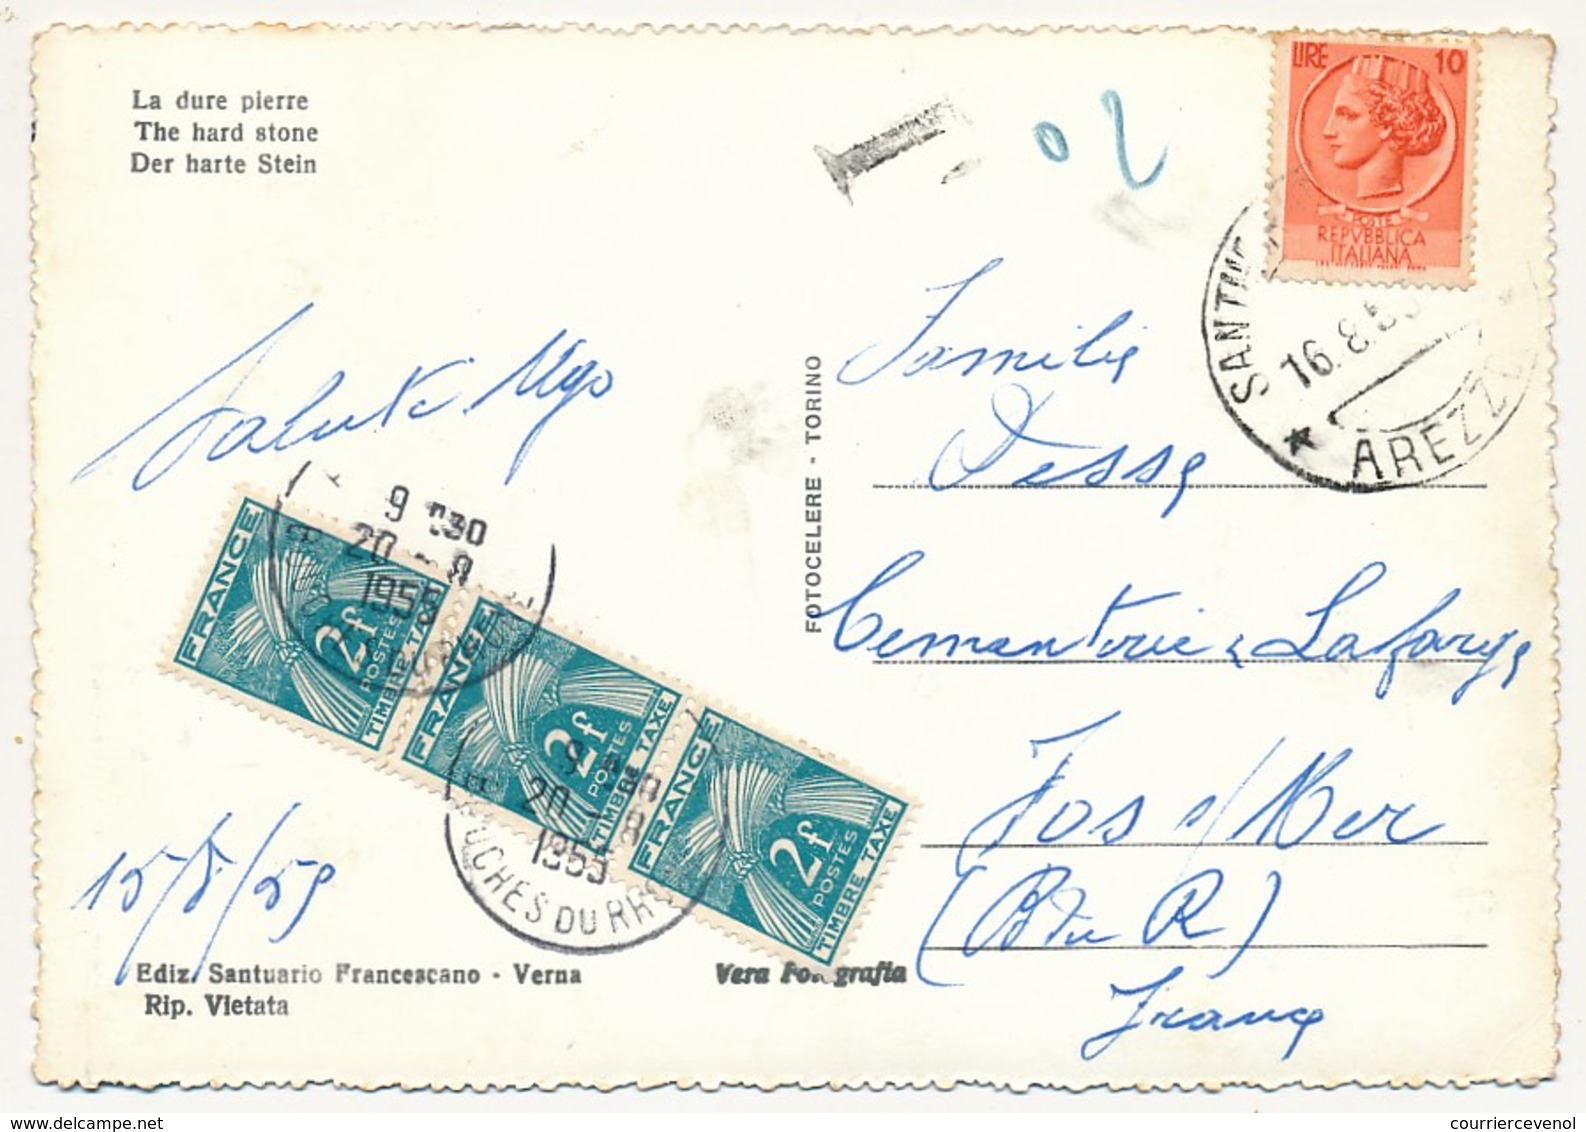 Lot 10 Cartes Postales, Toutes Taxées Type Gerbes, Valeurs En Anciens Francs, Tous états - 1859-1959 Briefe & Dokumente